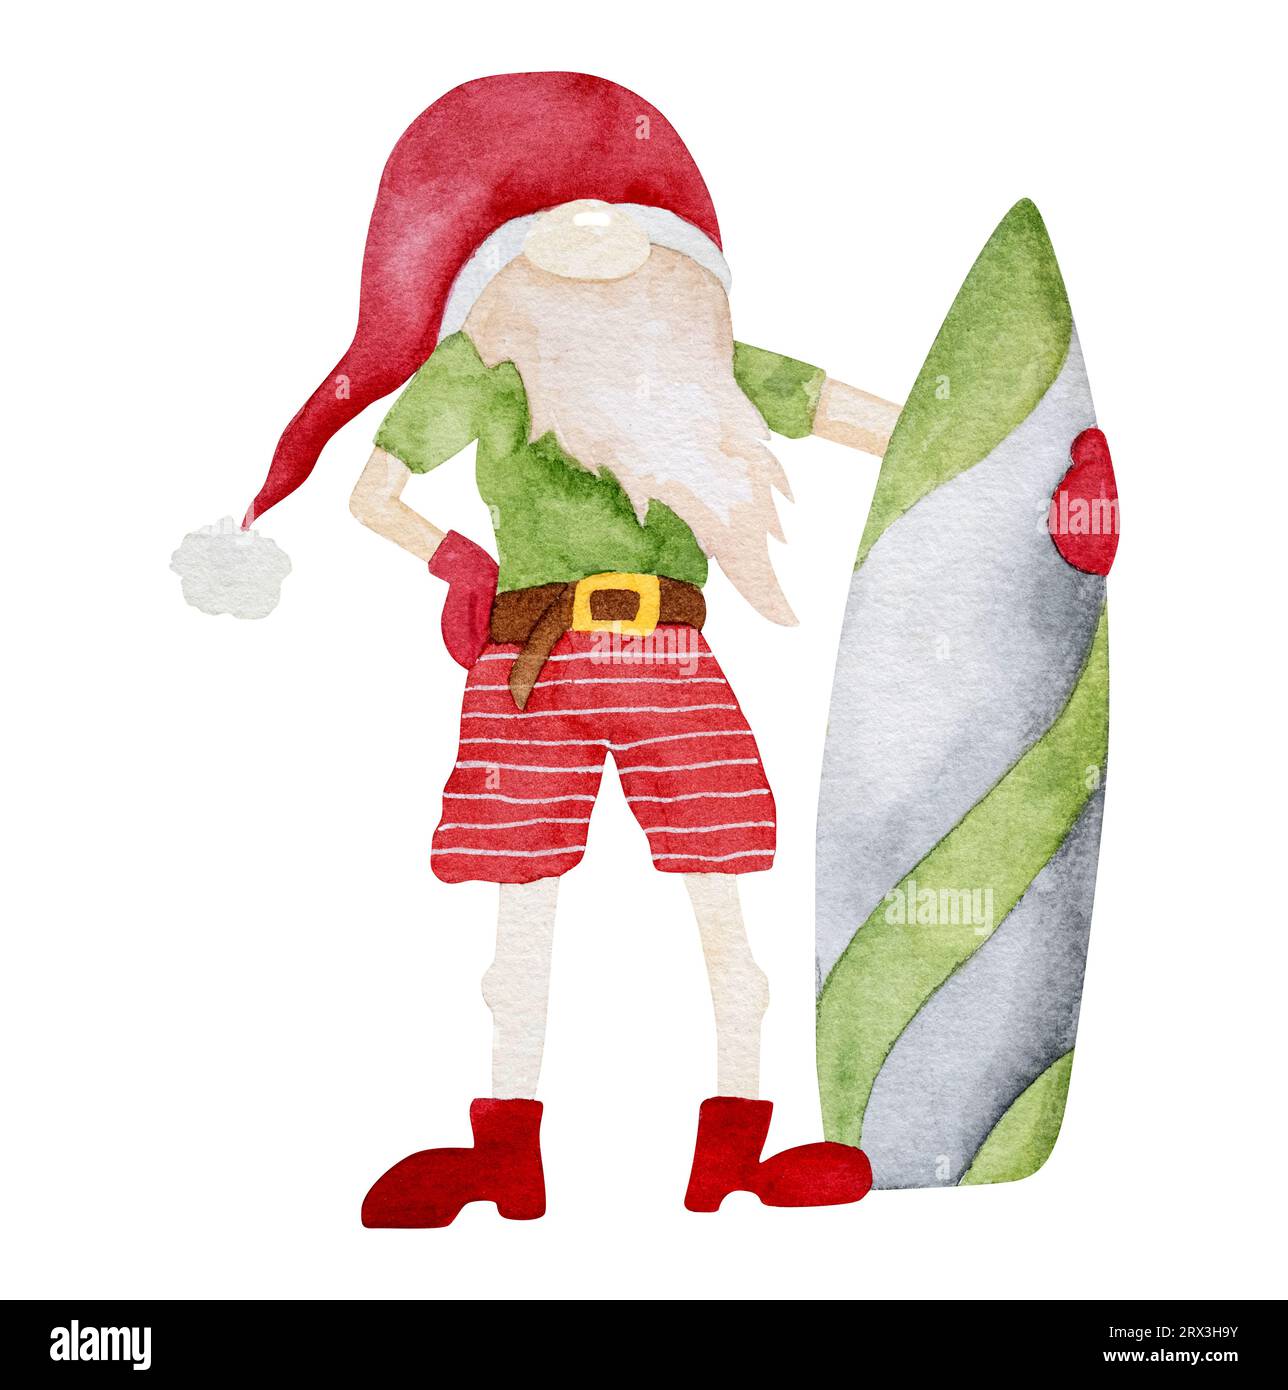 Joyeux noël des Caraïbes nain dans la peinture à l'aquarelle du chapeau de santa. Carte postale tropicale du nouvel an avec des gnomes de Noël drôles Banque D'Images